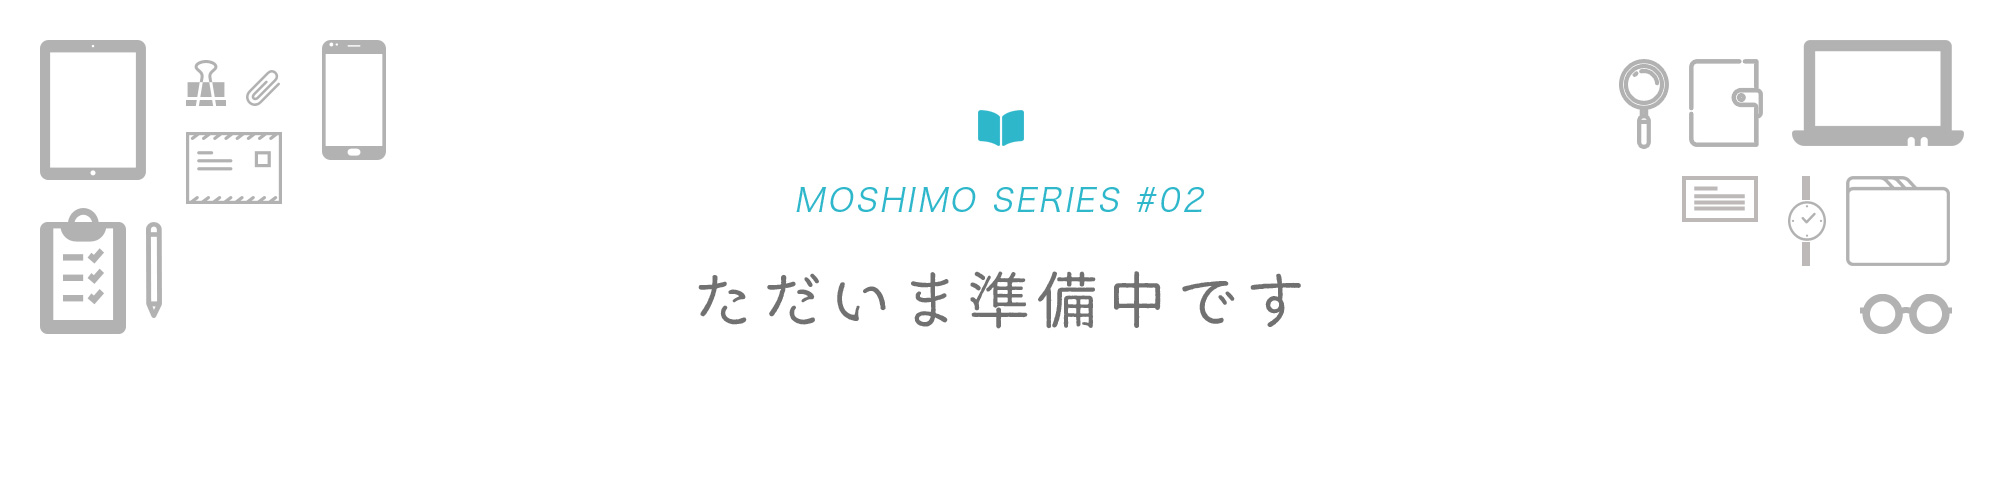 MOSHIMO SERIES #02 ただいま準備中です